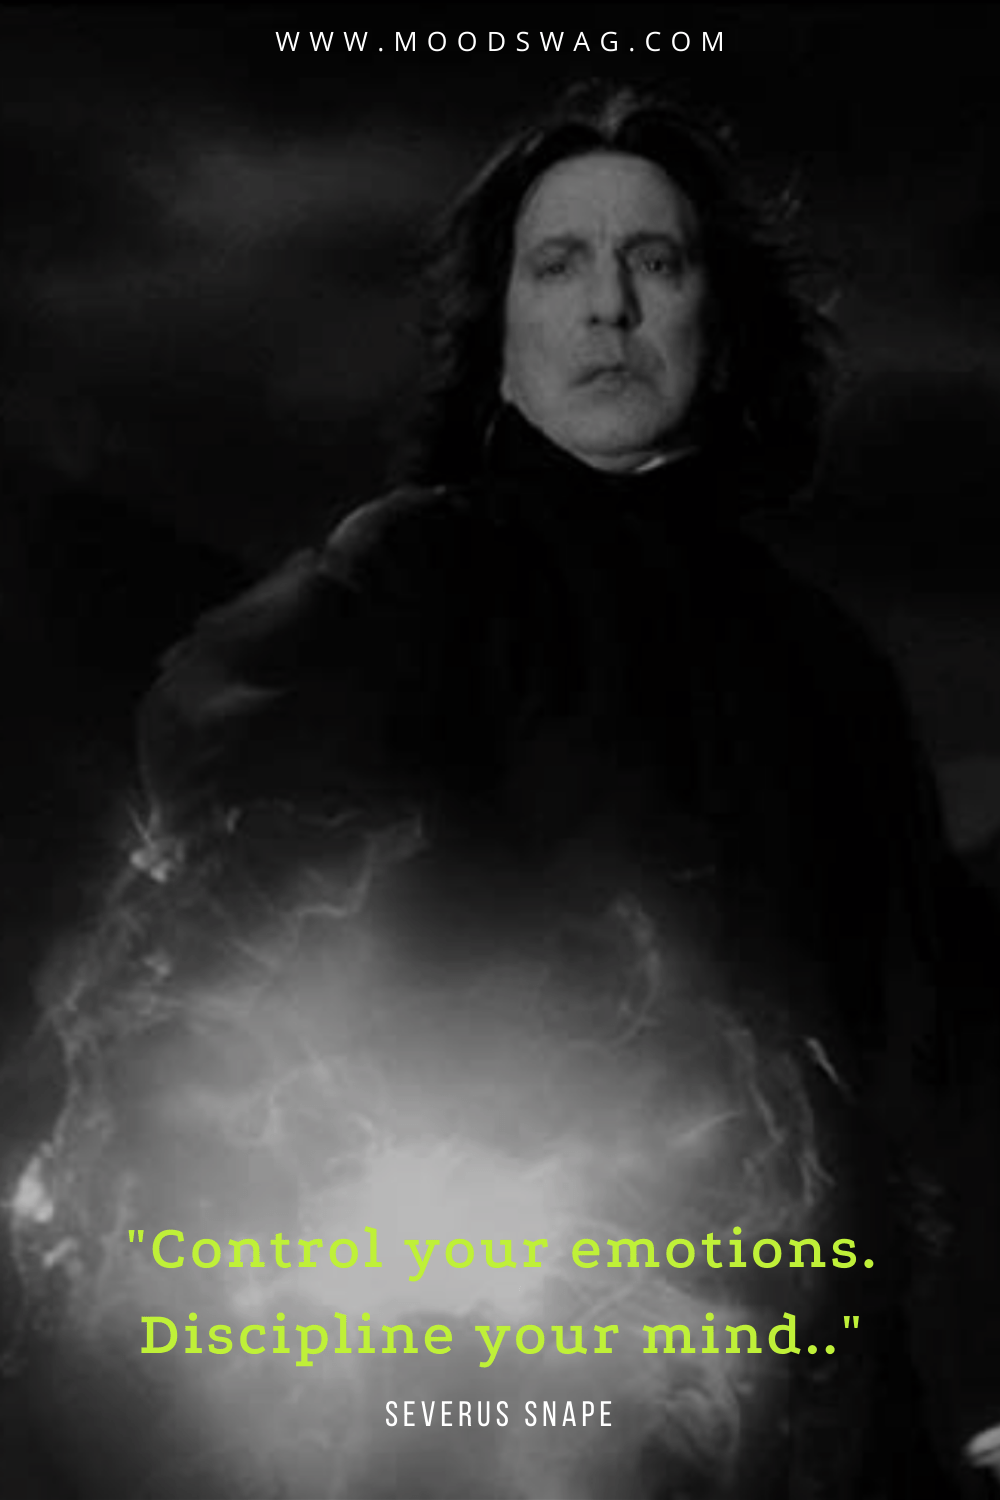 Severus snape quotes